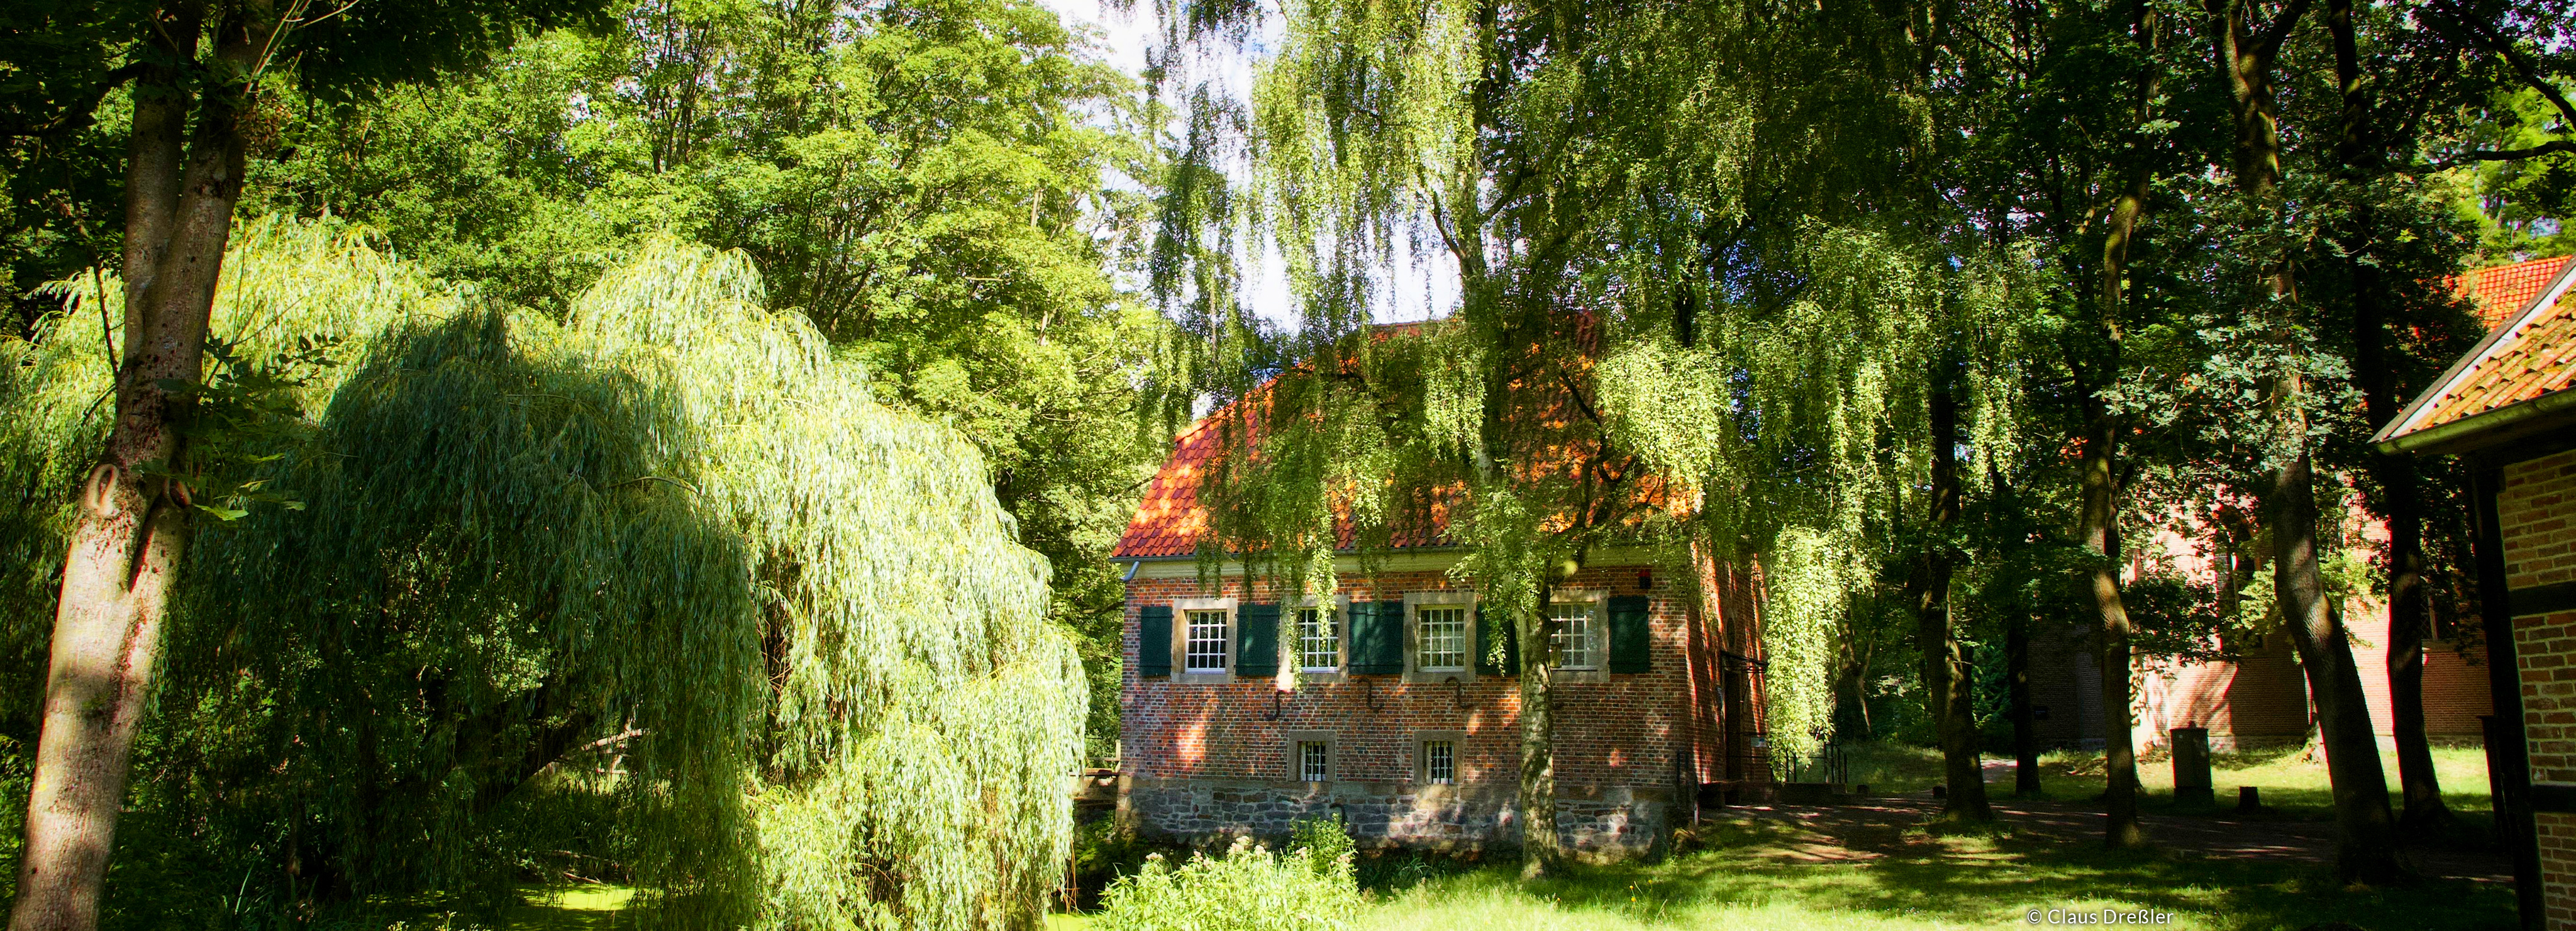 Ein historisches Haus im Grünen